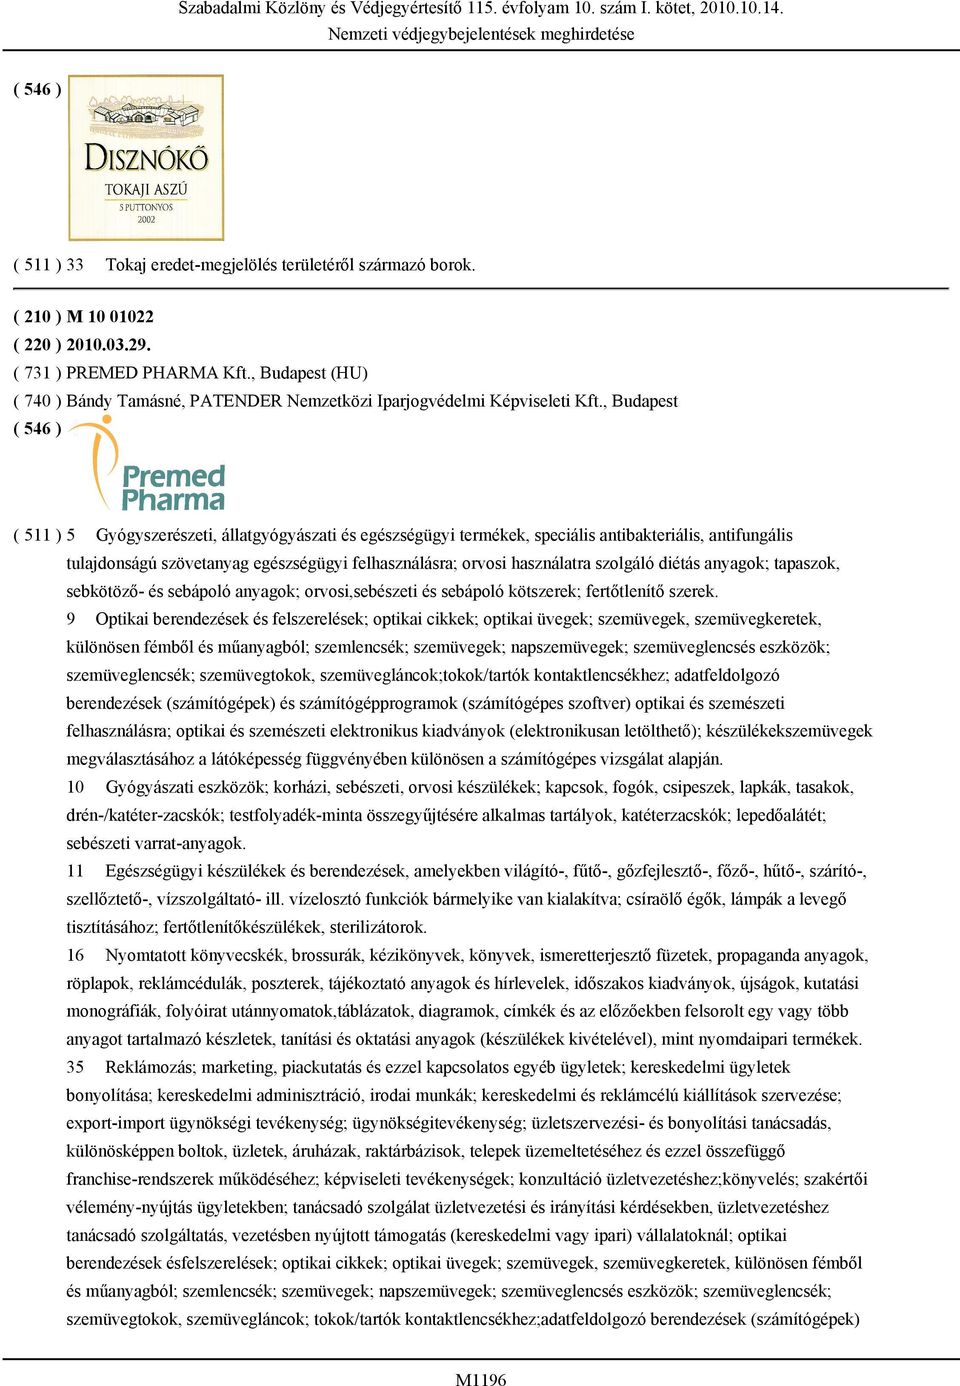 , Budapest ( 511 ) 5 Gyógyszerészeti, állatgyógyászati és egészségügyi termékek, speciális antibakteriális, antifungális tulajdonságú szövetanyag egészségügyi felhasználásra; orvosi használatra